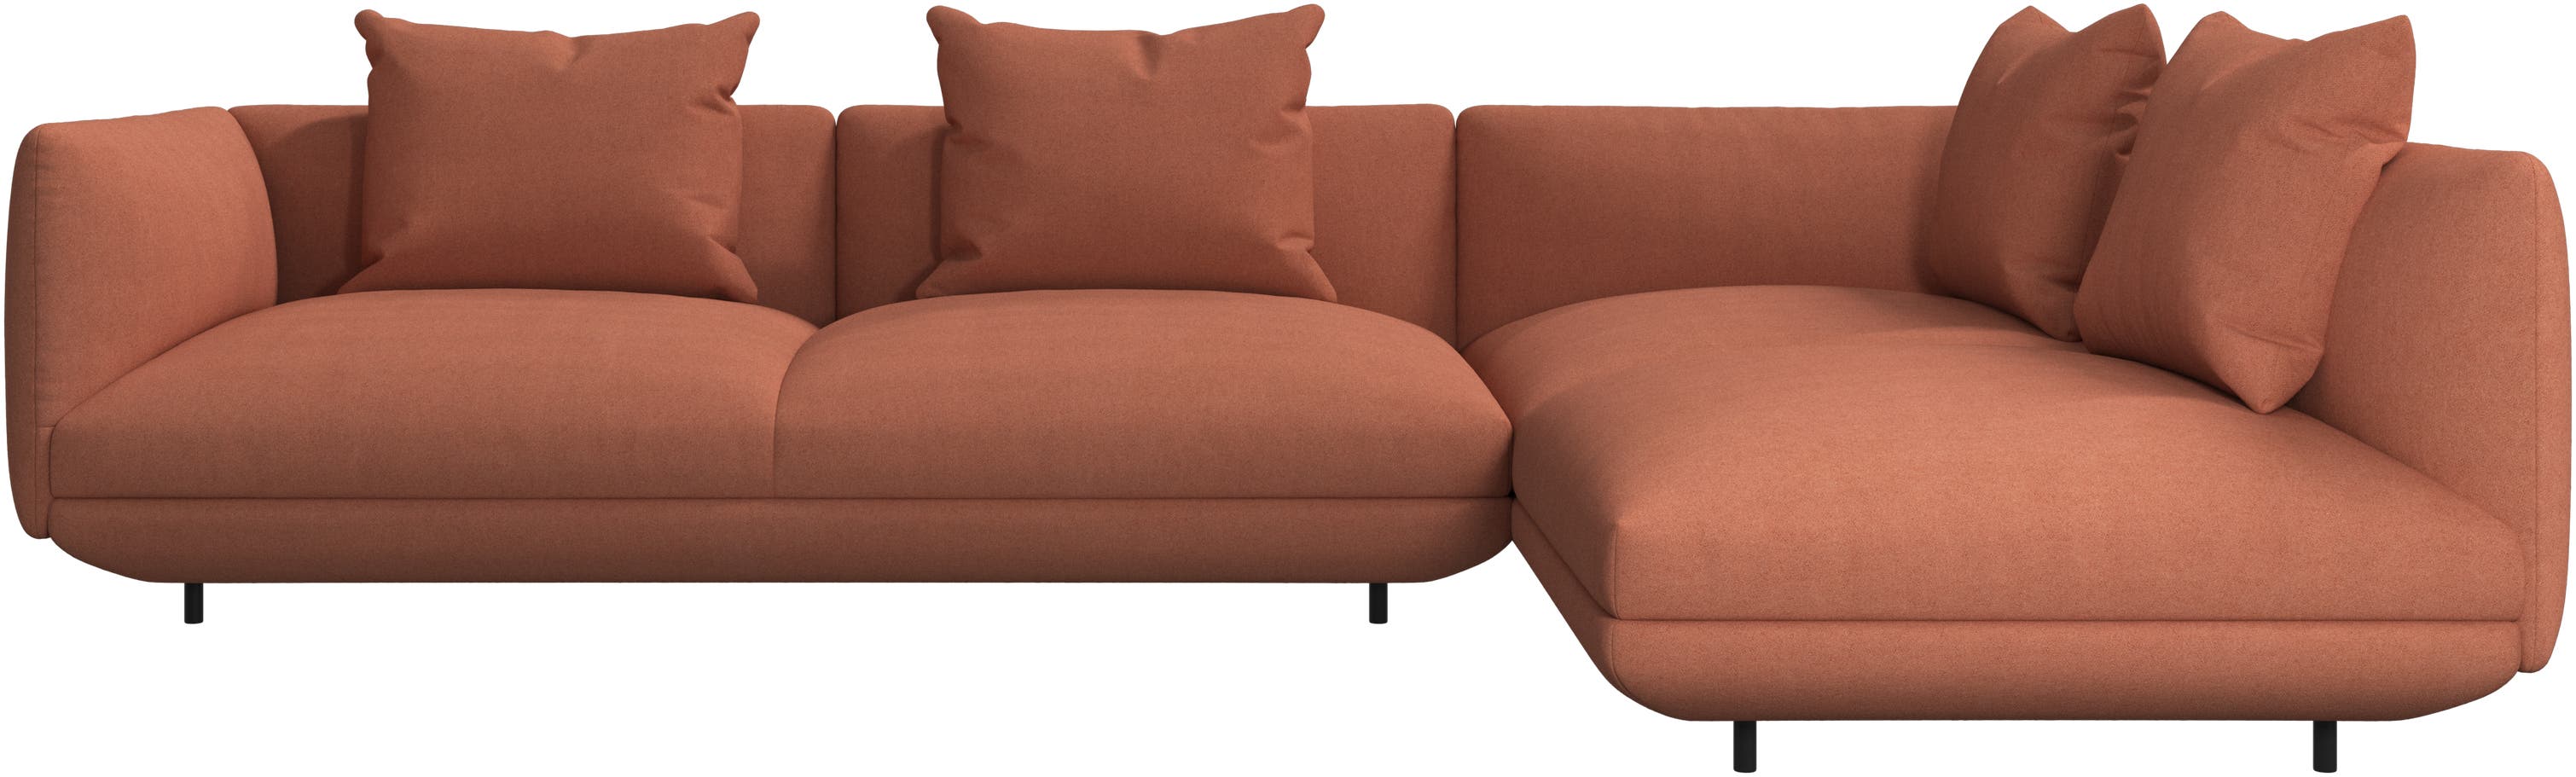 Salamanca corner sofa